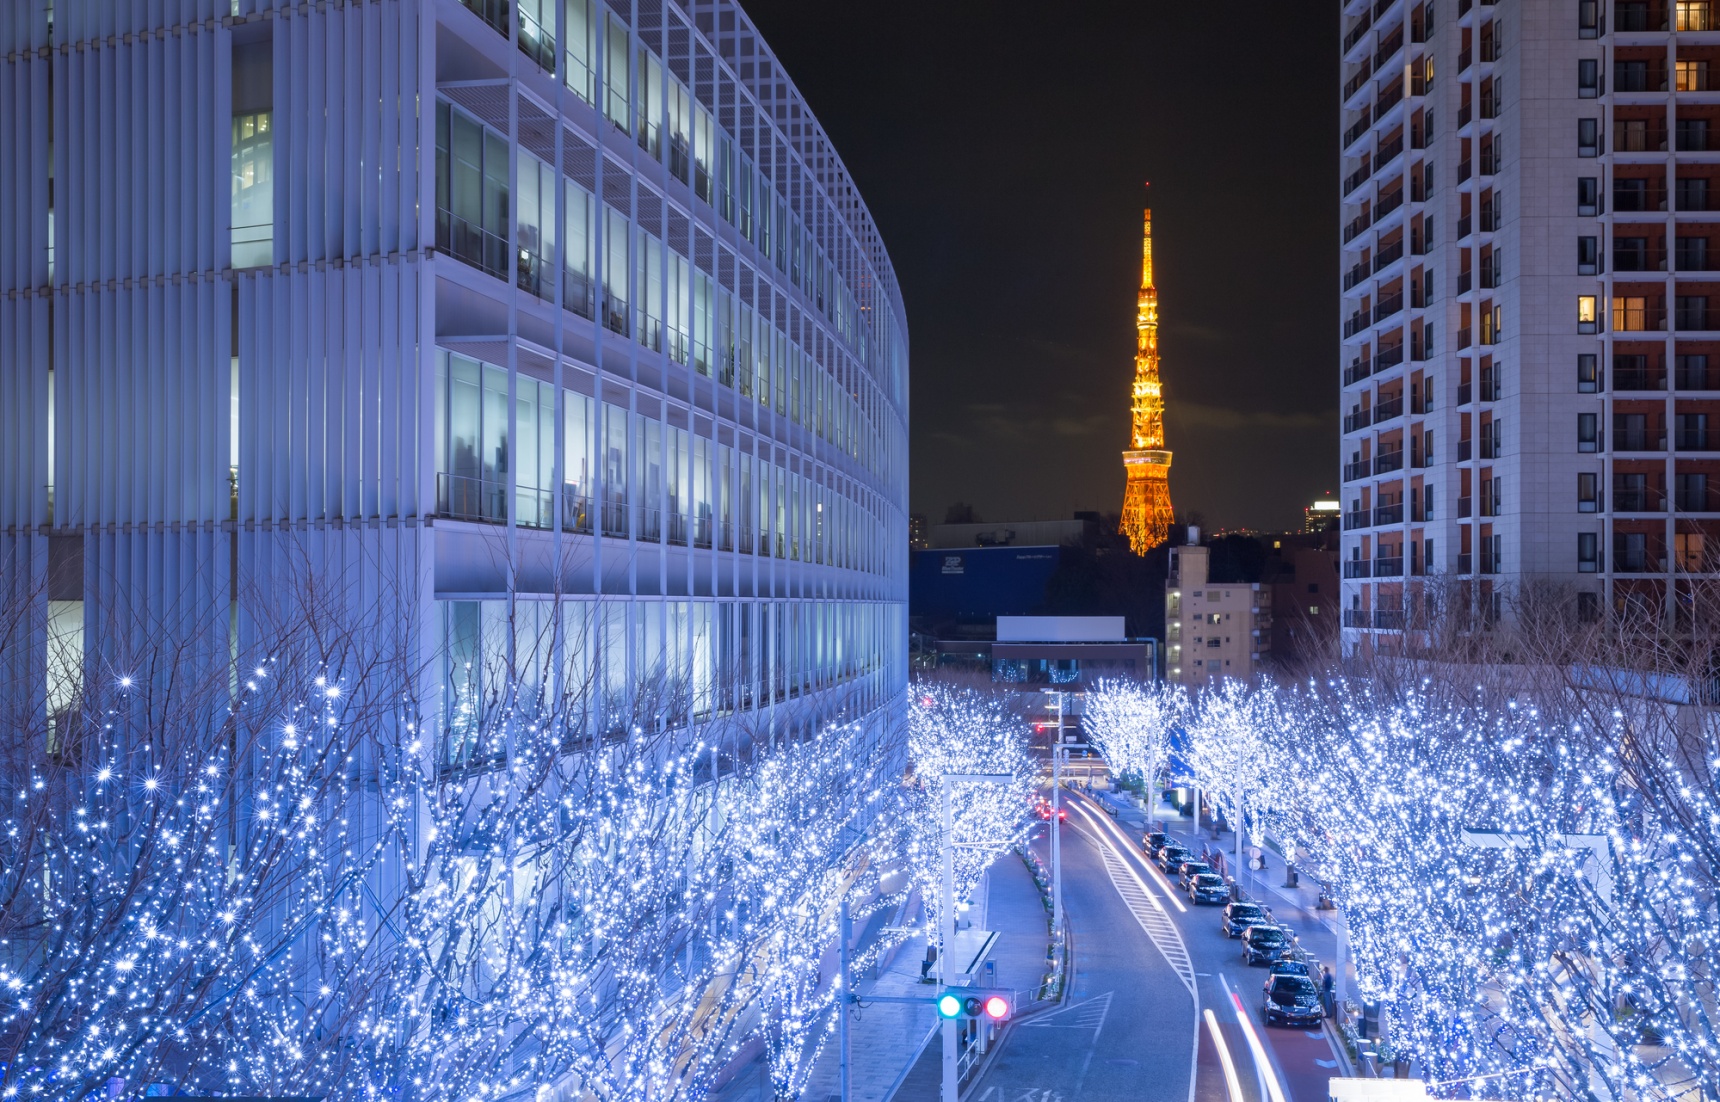 Tokyo's Top 5 Winter Illumination Events 2019!